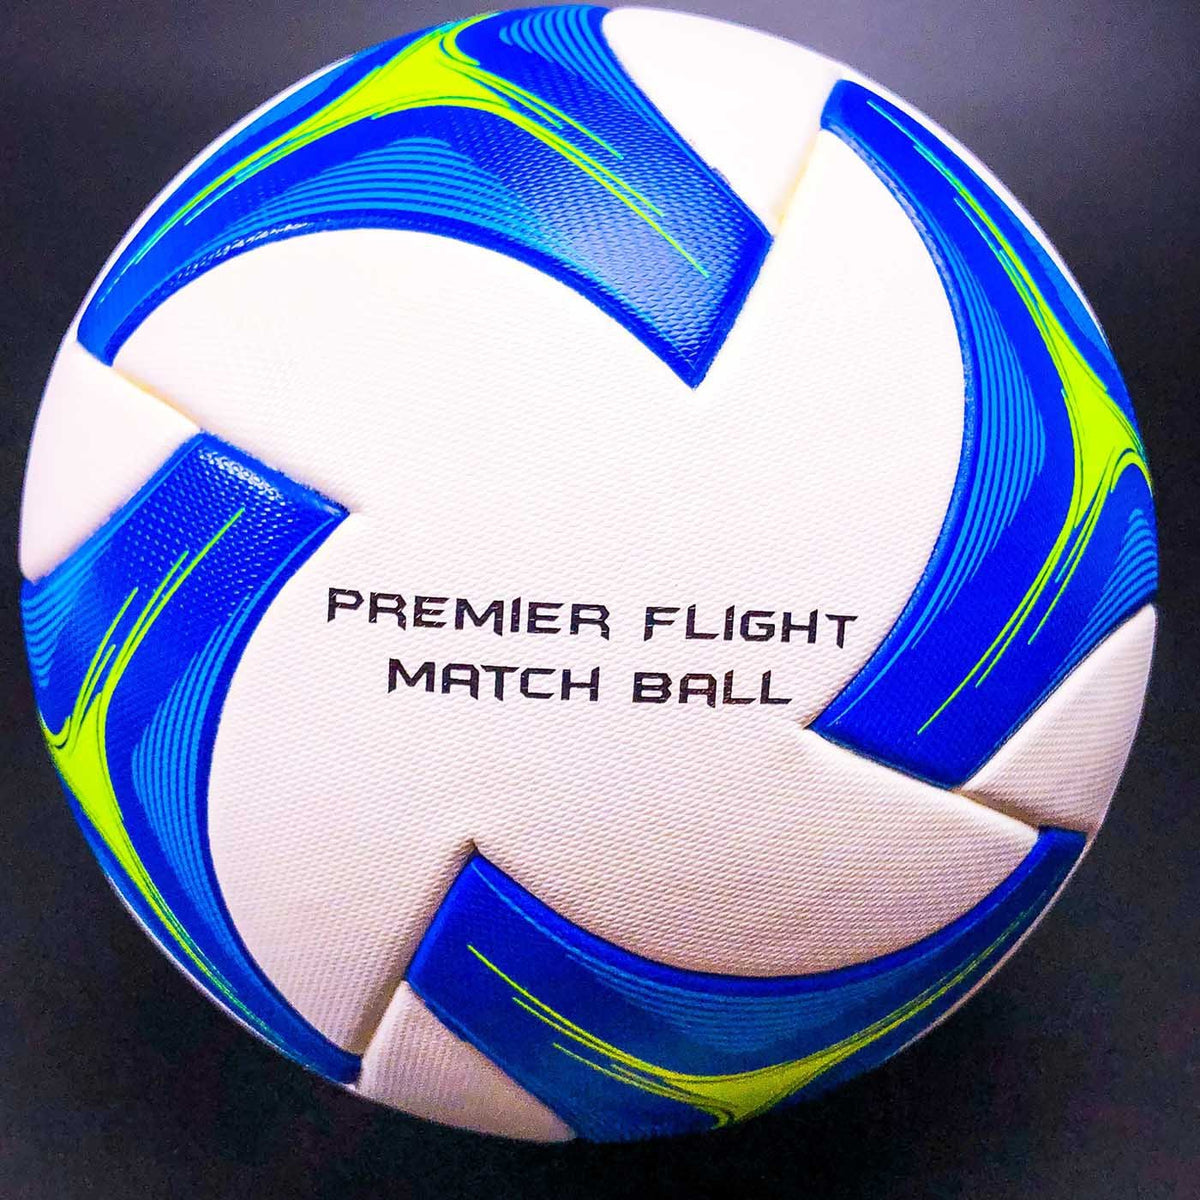 Premier Flight Match Ball - West Coast Goalkeeping